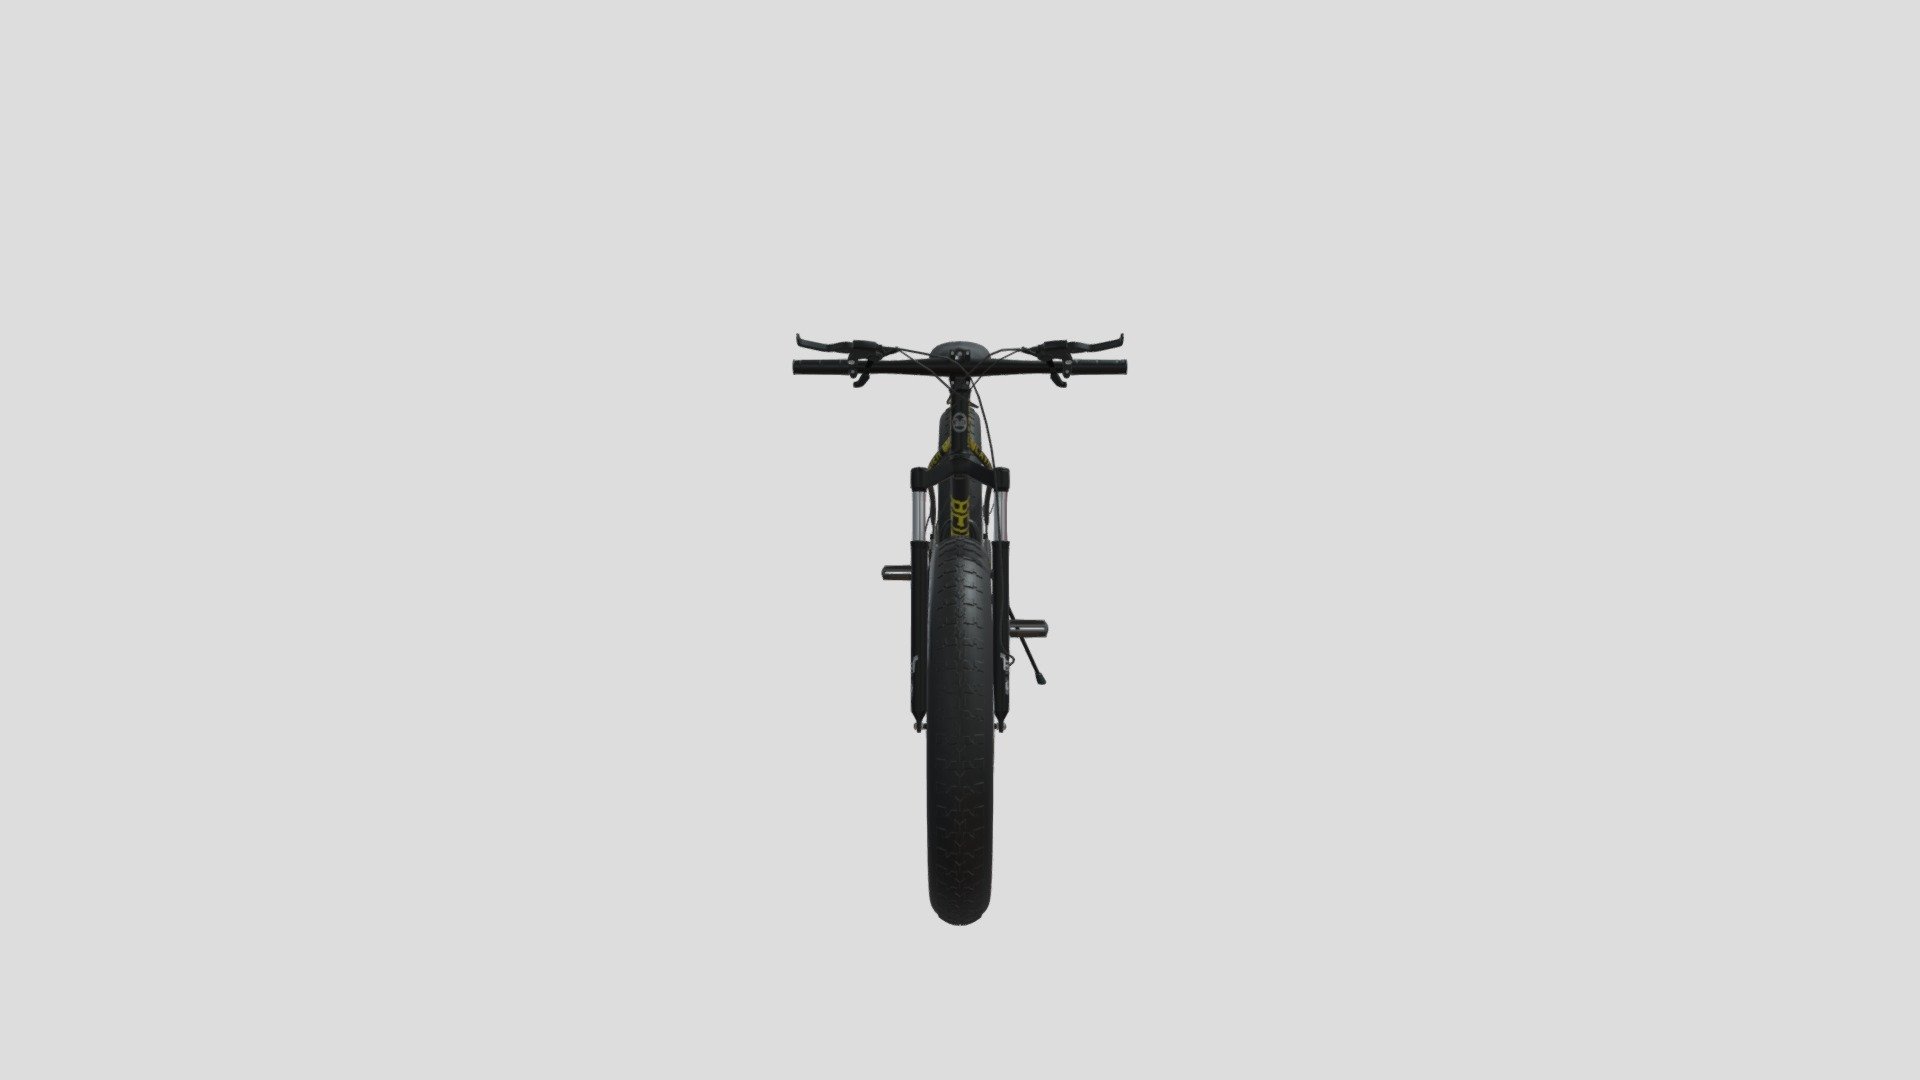 3D Model, Fat Bike, - Fat Bike - 3D model by IACG 3d model